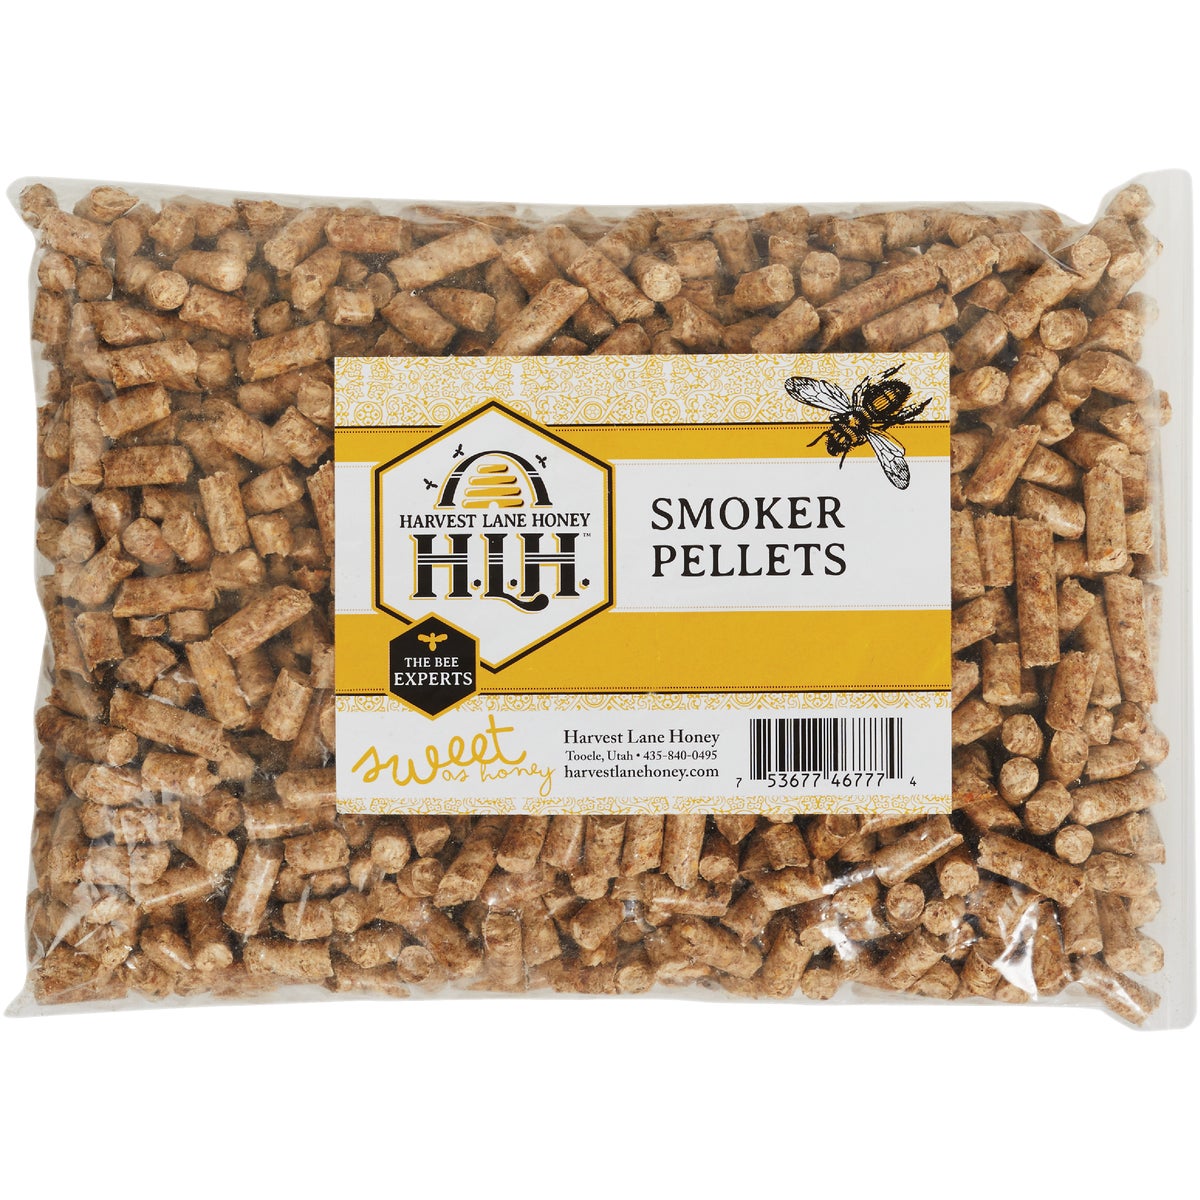 Item 704020, Smoker pellets designed to be used in Harvest Lane Honey smoker.